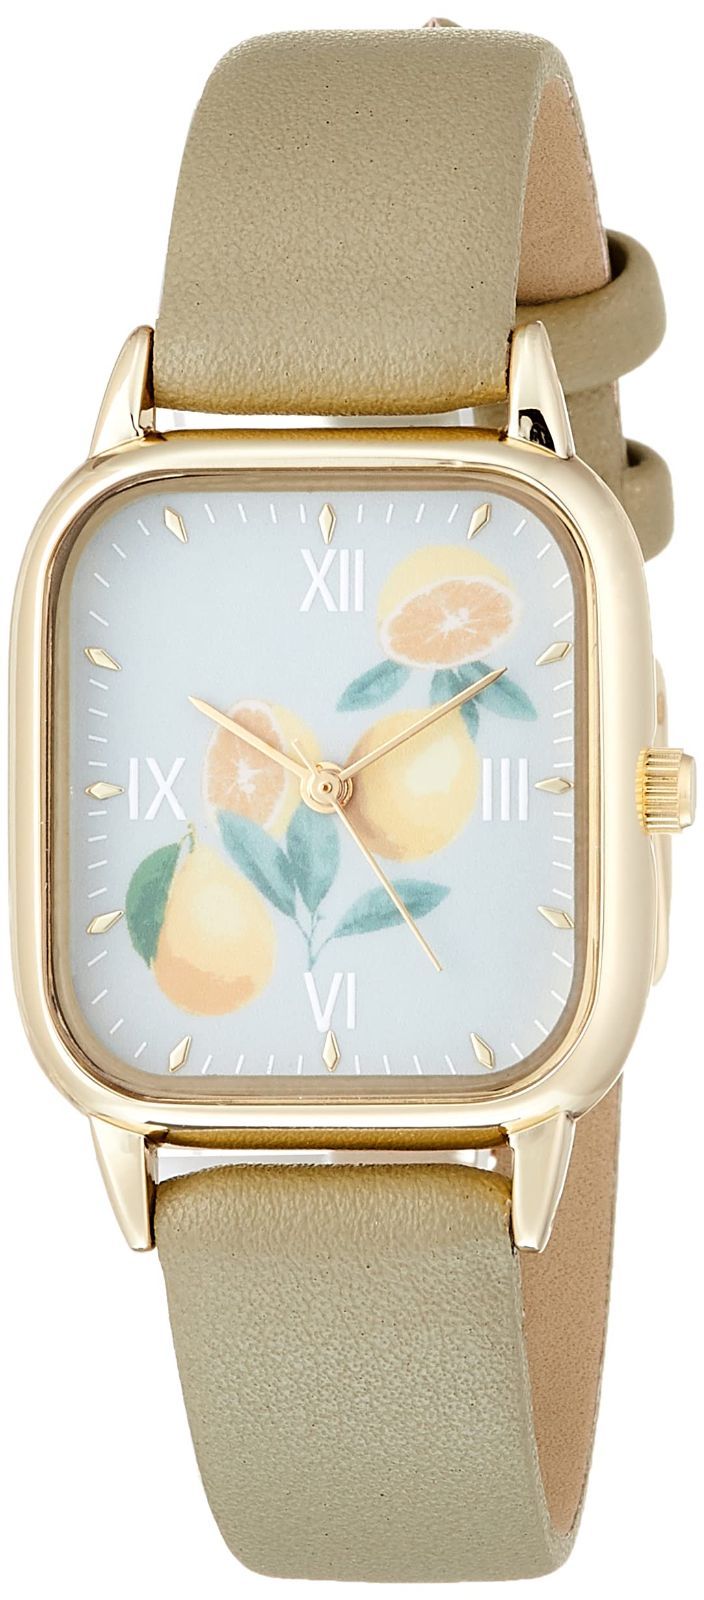 [フィールドワーク] 腕時計 アナログ ビルト 花柄 ゴールド 革ベルト ASS159-4 レディース カーキ